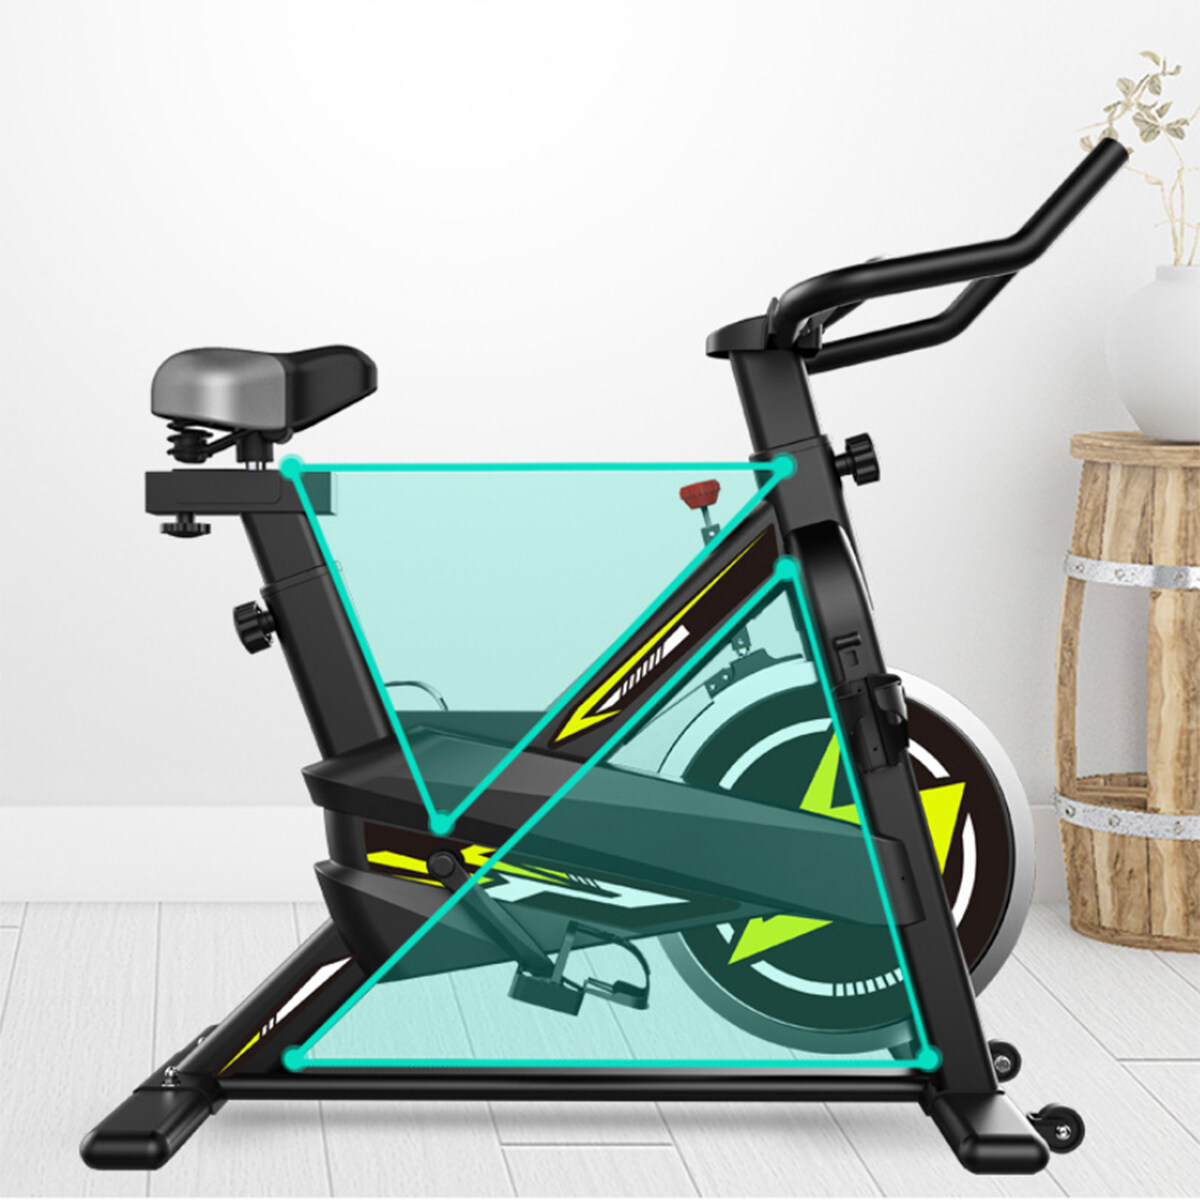 จักรยานออกกำลังกาย เครื่องออกกำลังกาย จักรยานนั่งปั่นออกกำลังกาย จักรยานเพื่อสุขภาพ จักยานลดน้ำหนัก จักรยานบริหาร Exercise bike